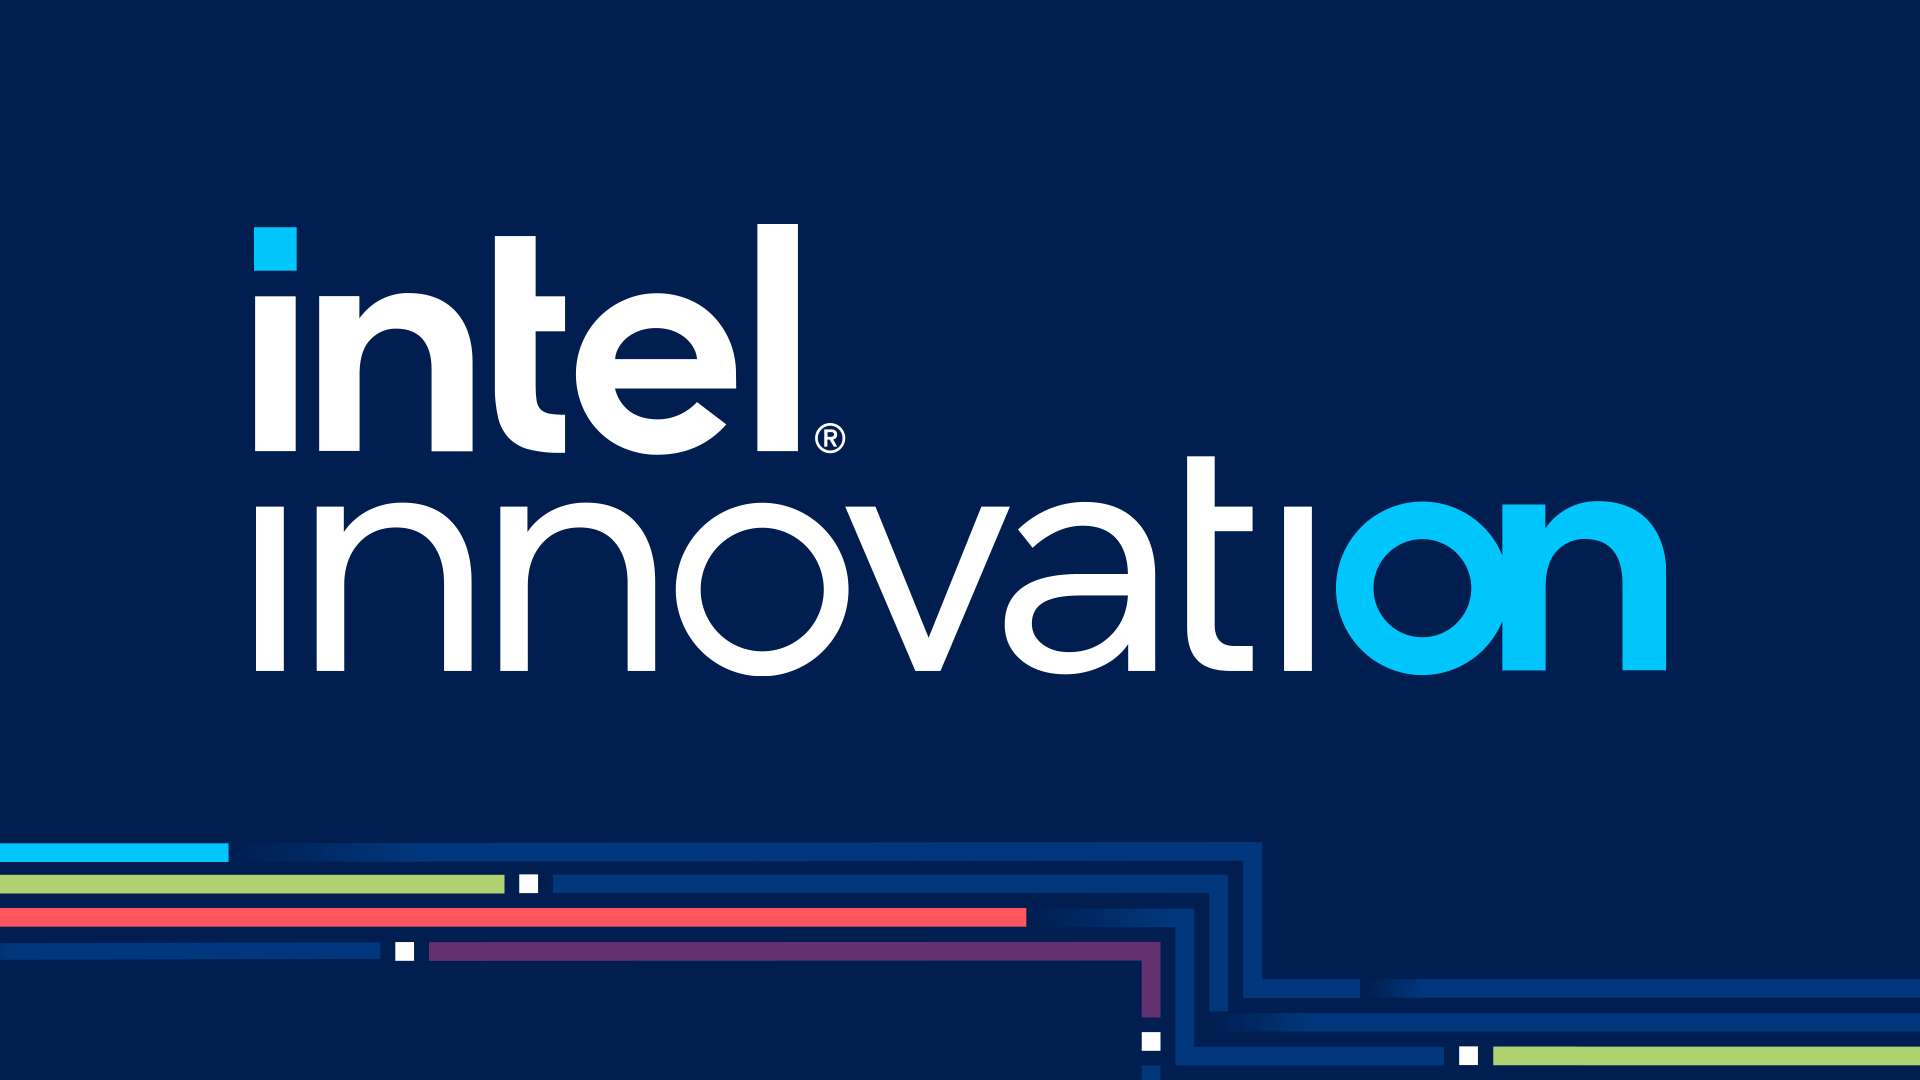 Intel Innovation